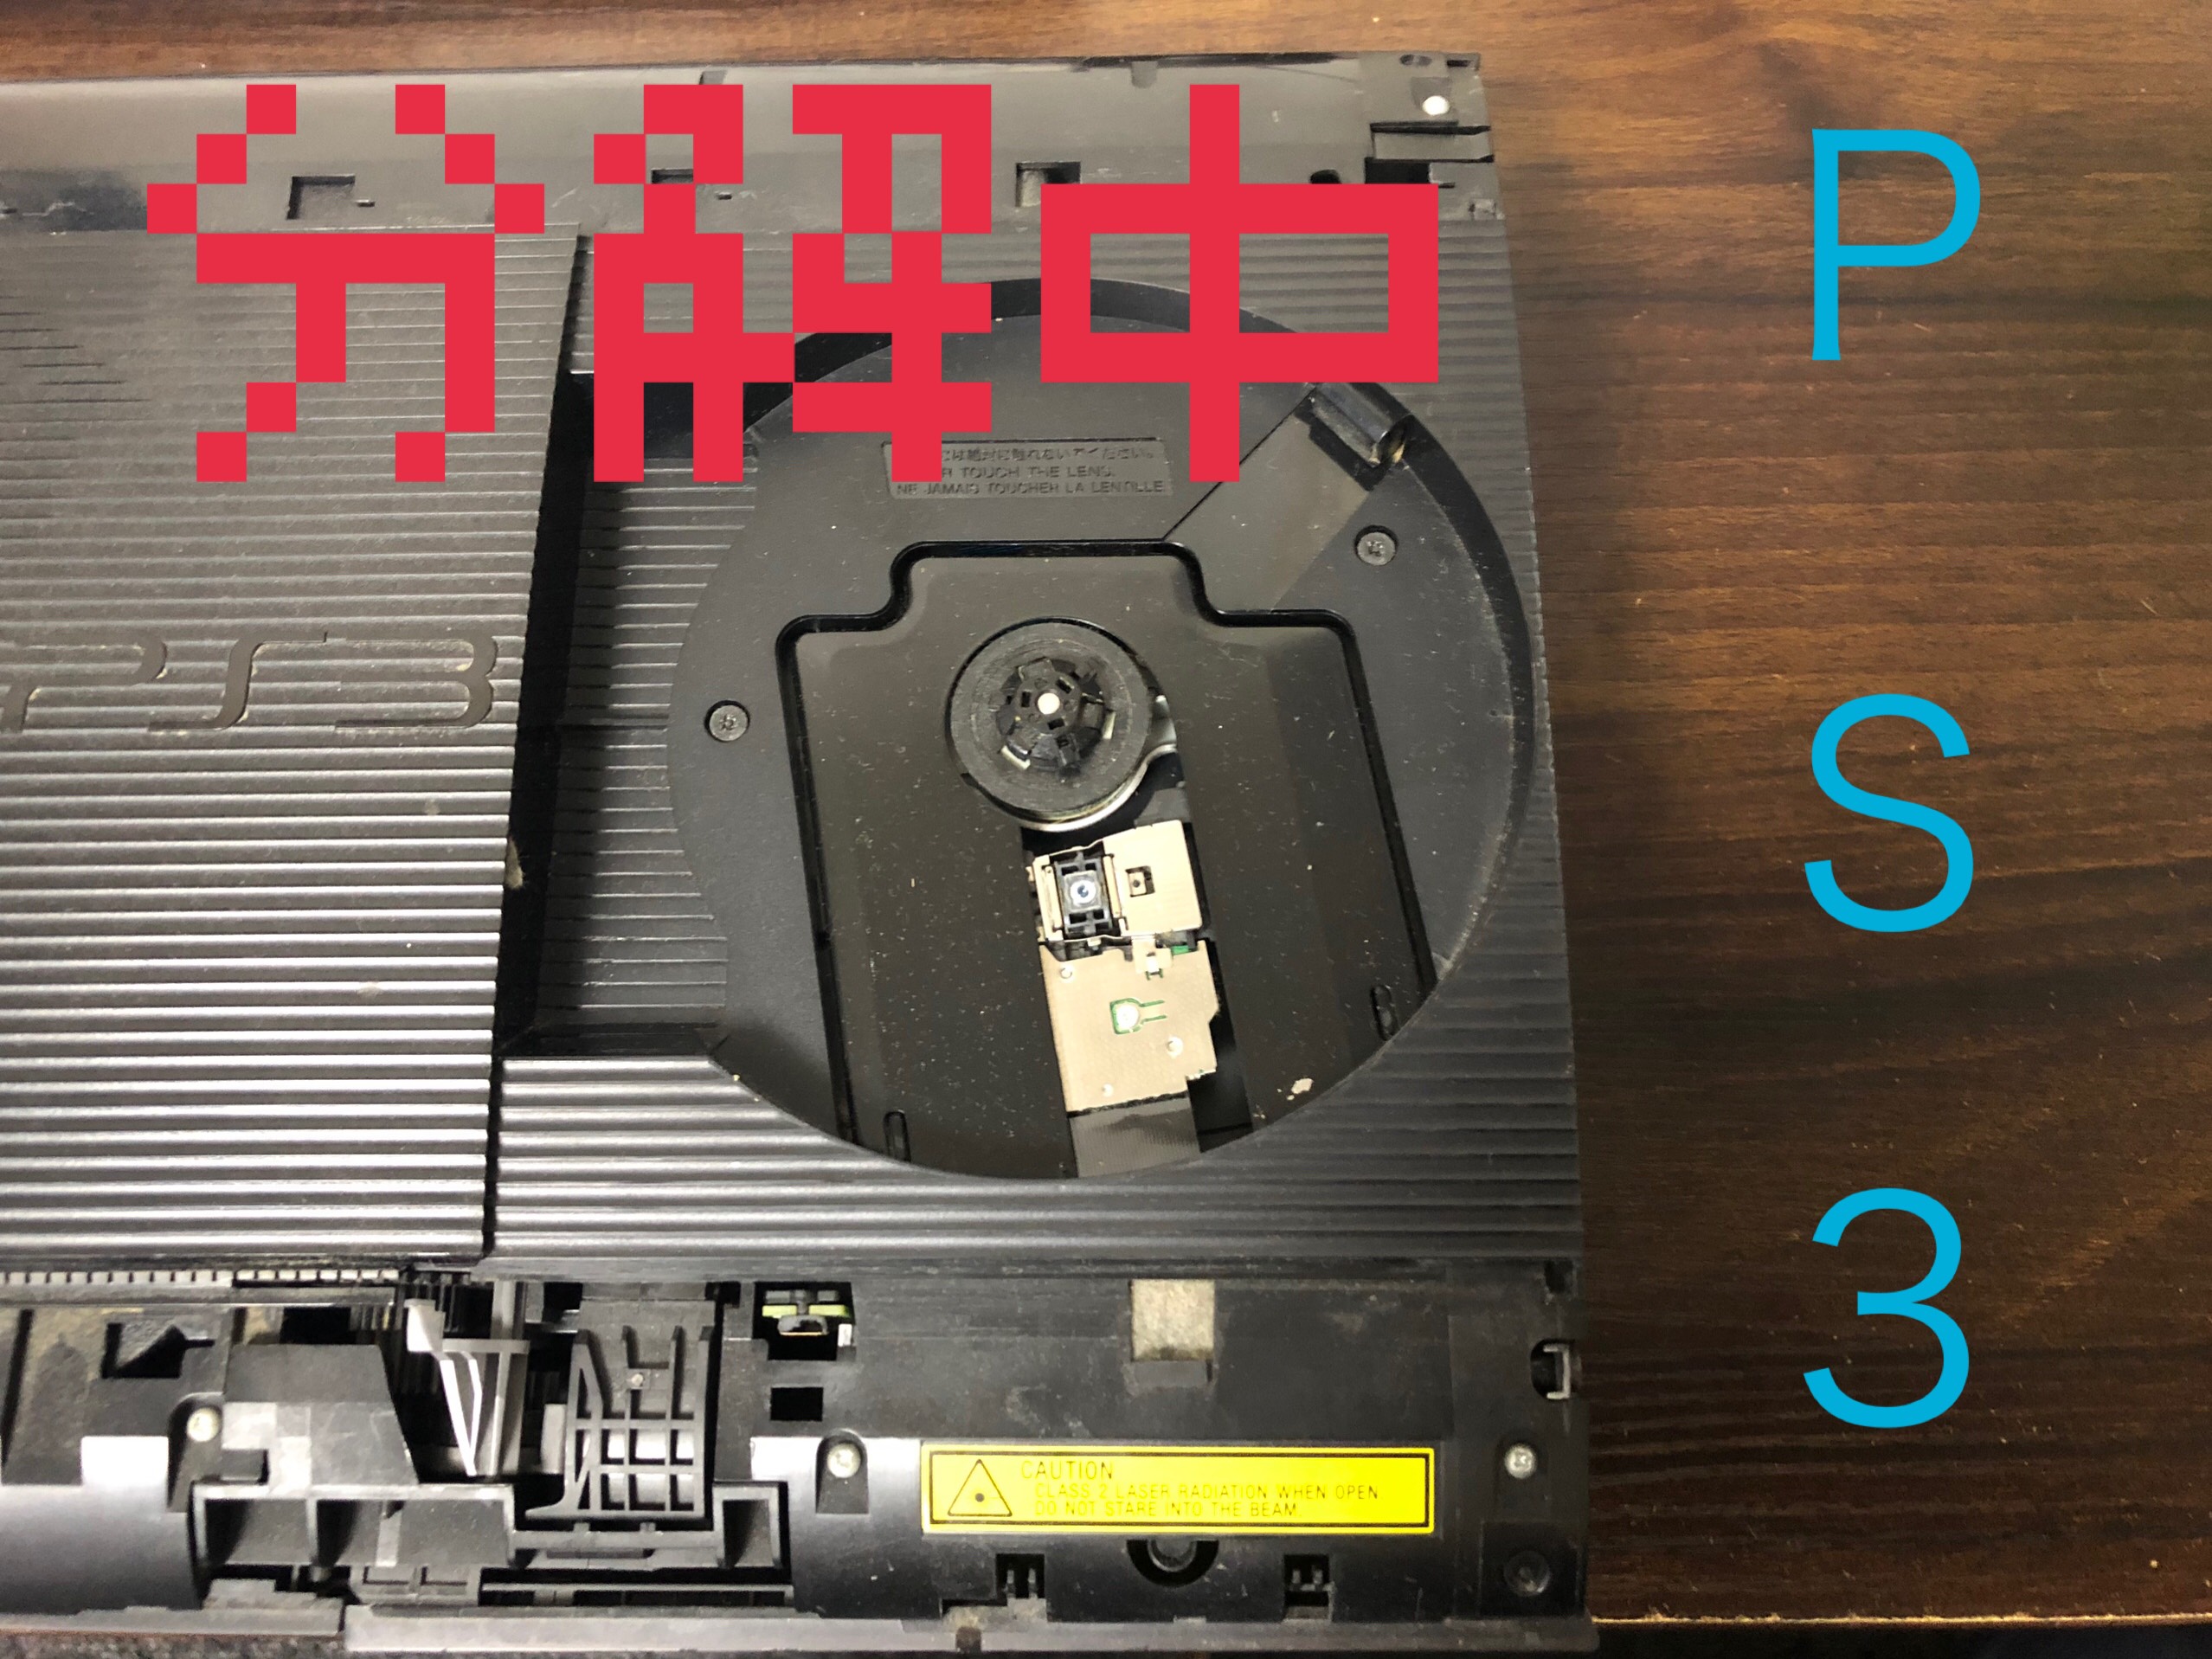 異音 起動のしない時のps３修理内容 Nintendo3ds Switch Psp 修理のゲームホスピタル Nintendo3ds ニンテンドーds Psp Switch 修理